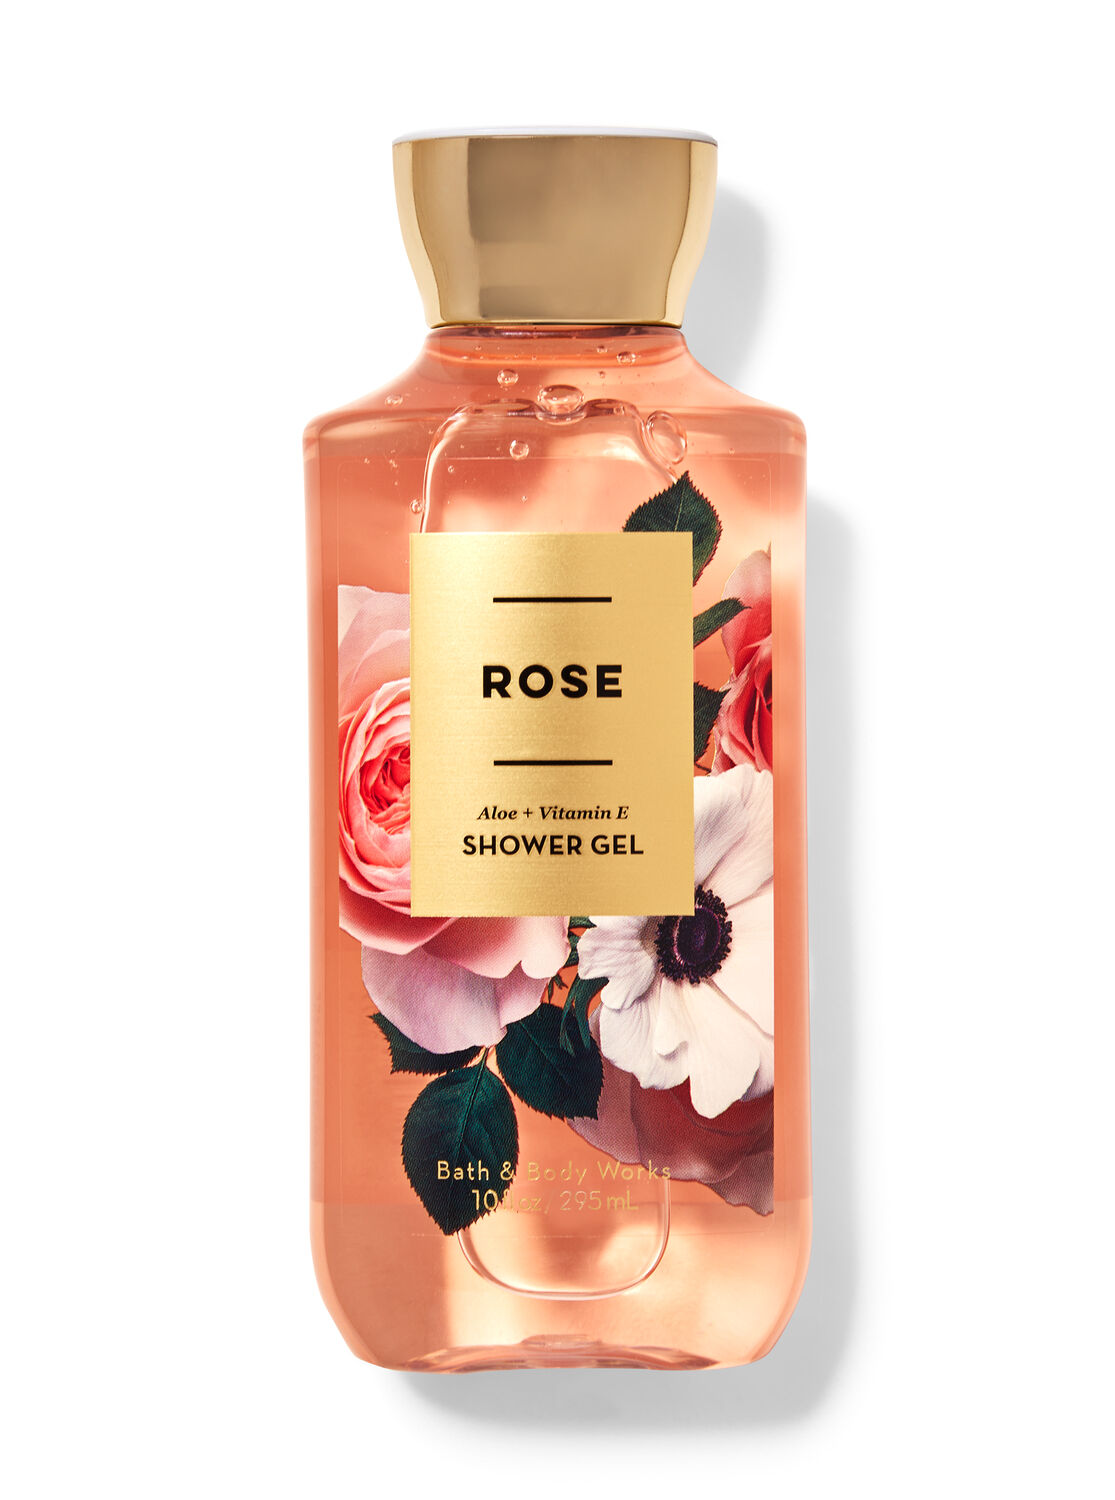 Bath & Body Works Rose Shower Gel 10 fl oz